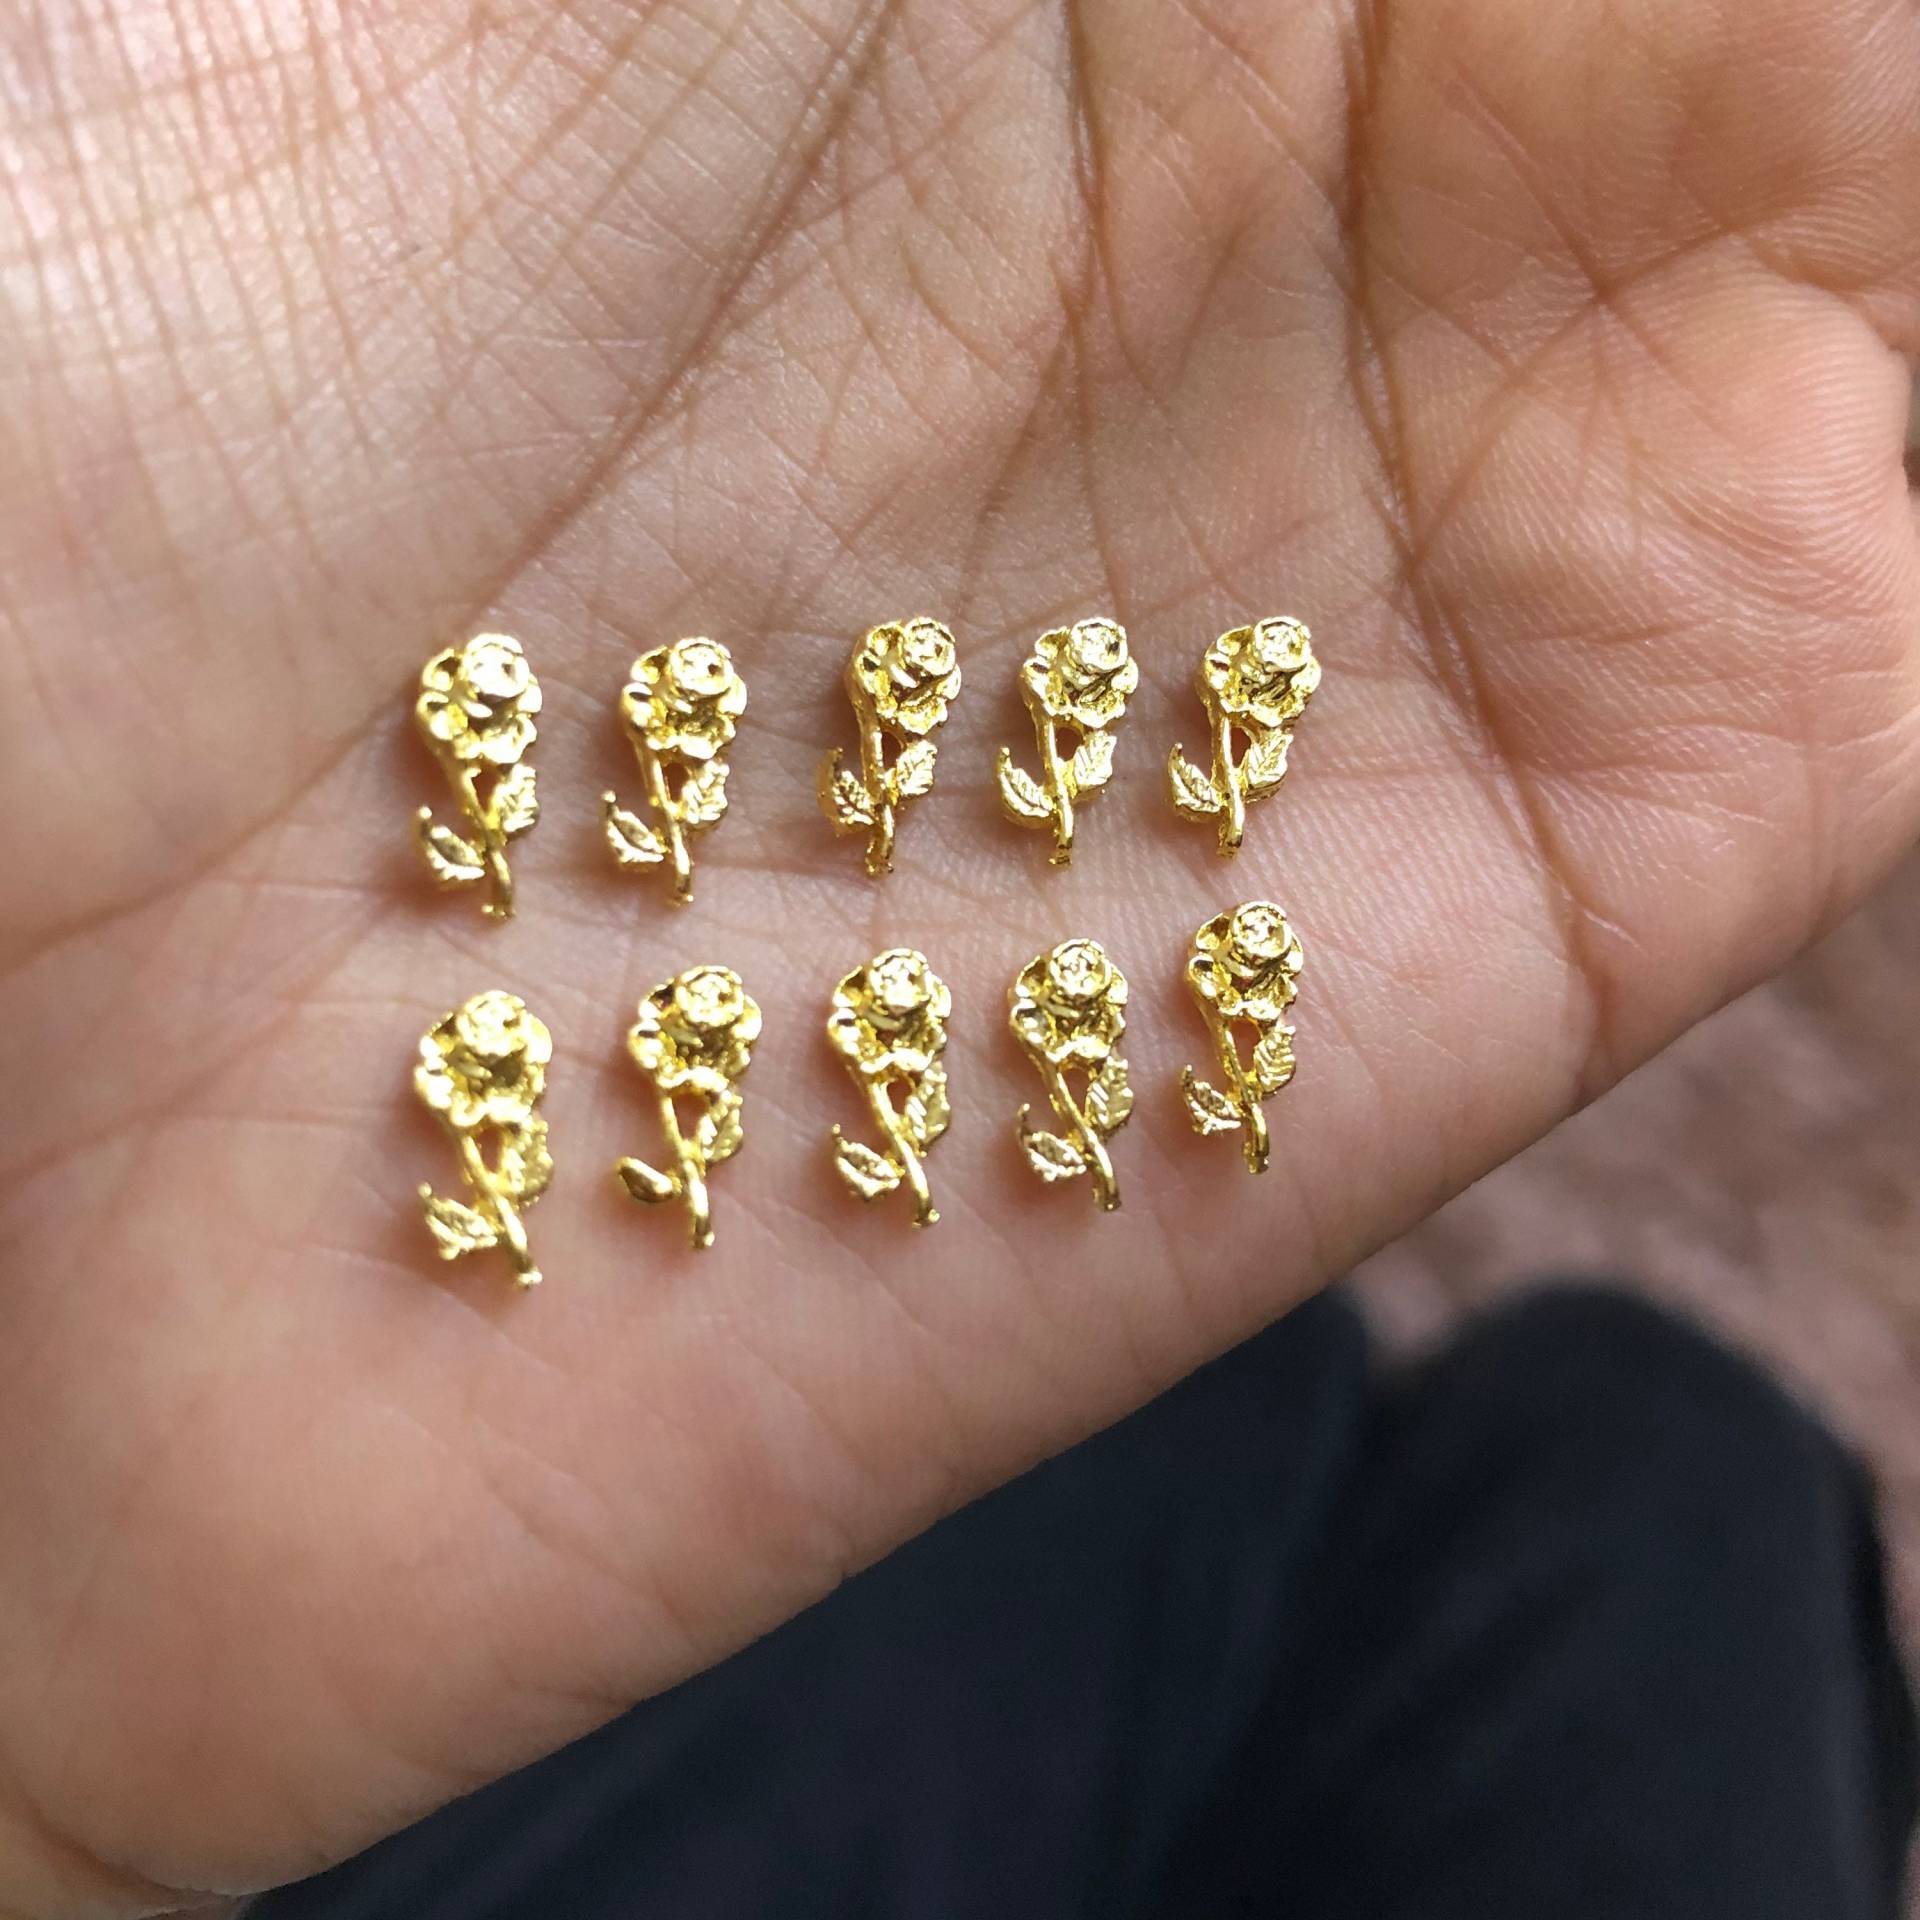 Gold Blüten Charms Für Nail Art - 20stk von CometNailSupply